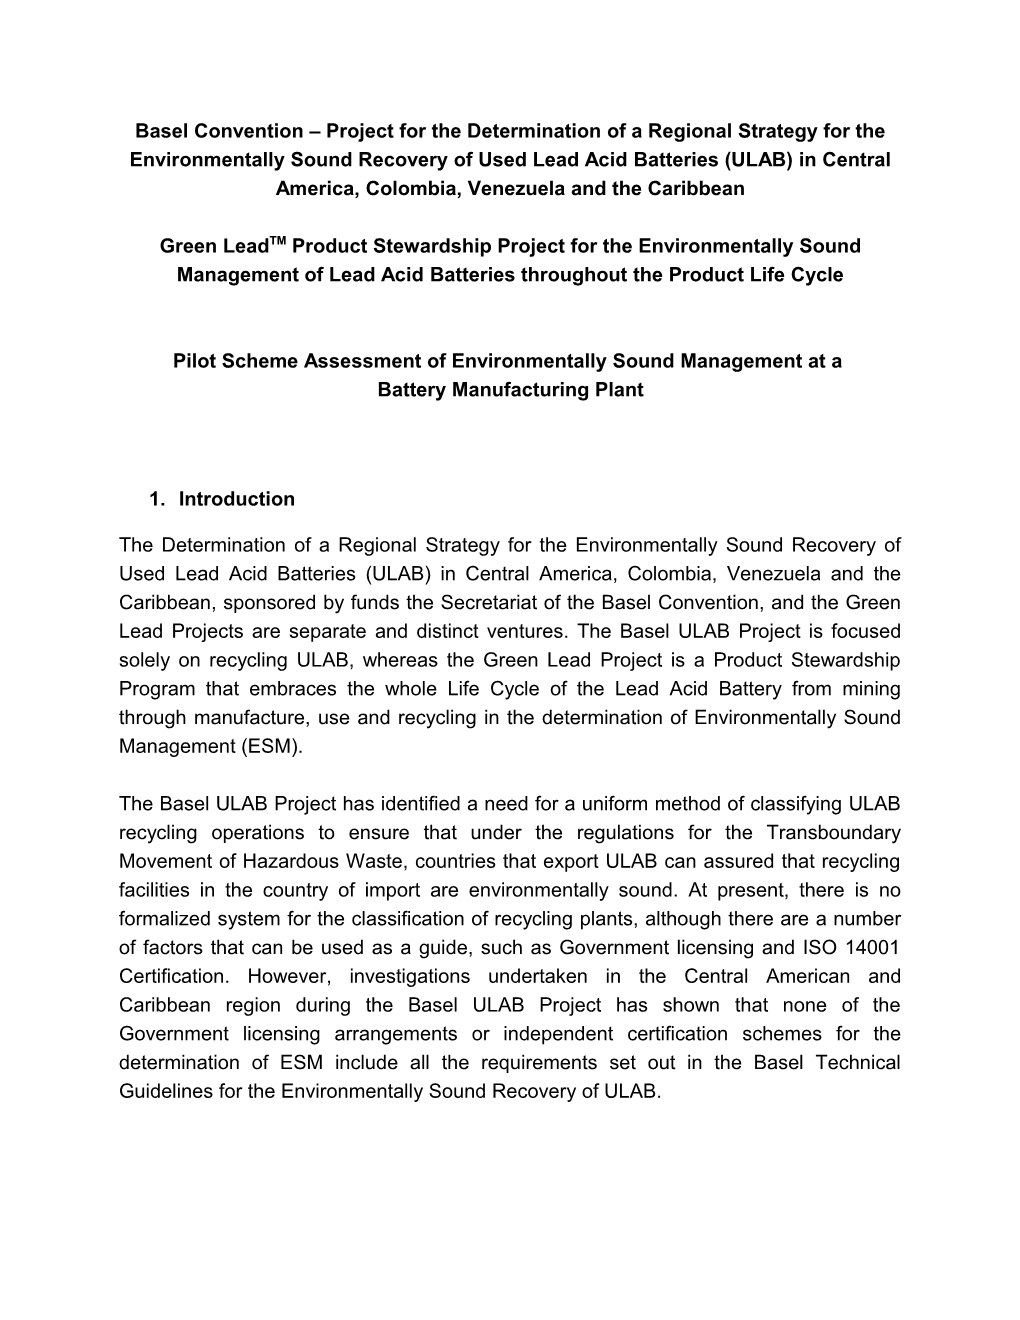 Pilot Scheme Assessment of Environmentally Sound Management at A